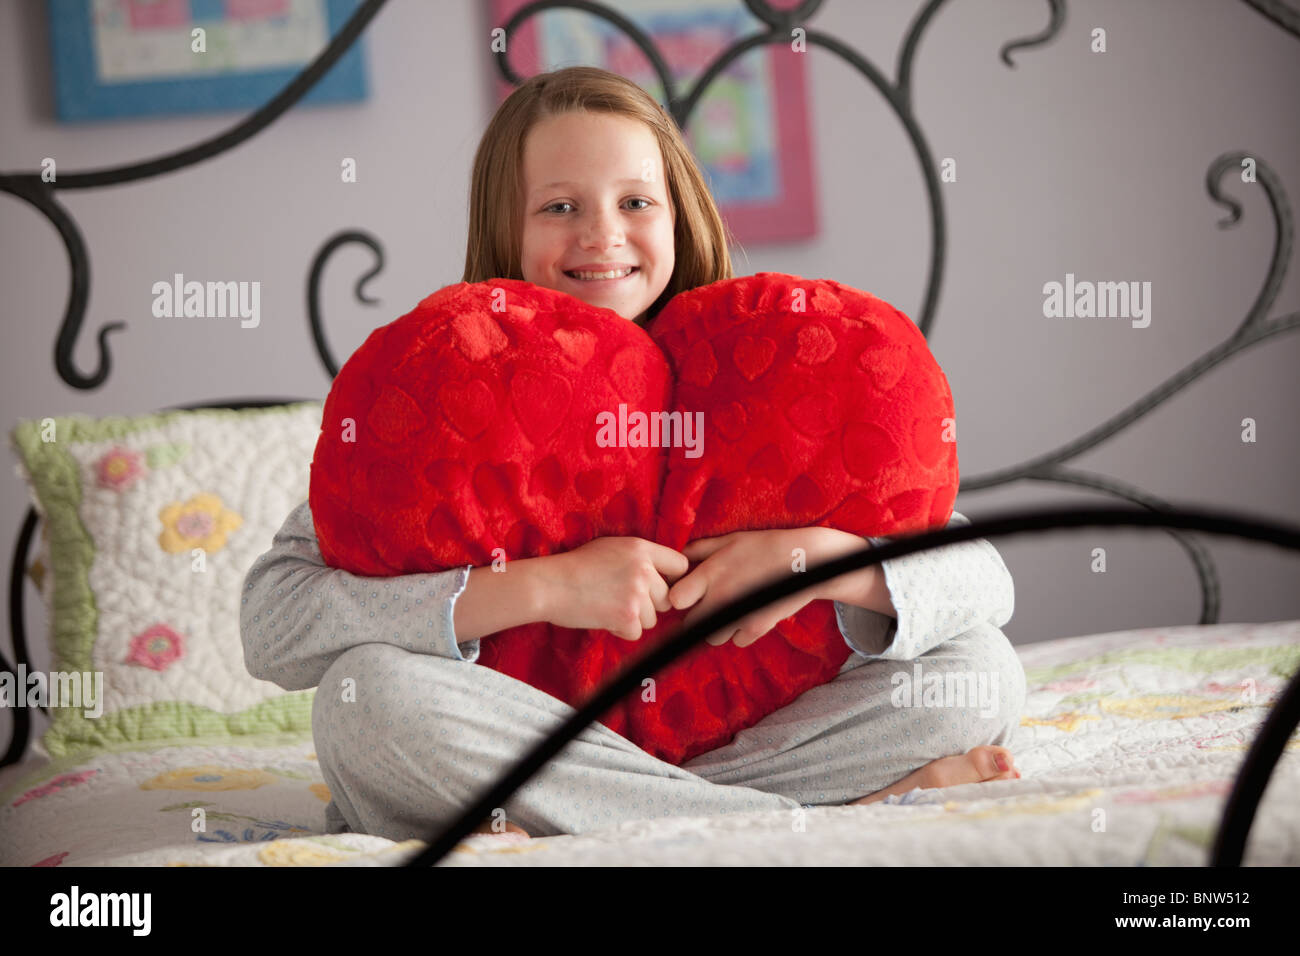 Junges Mädchen hält eine Herz-Kissen Stockfoto